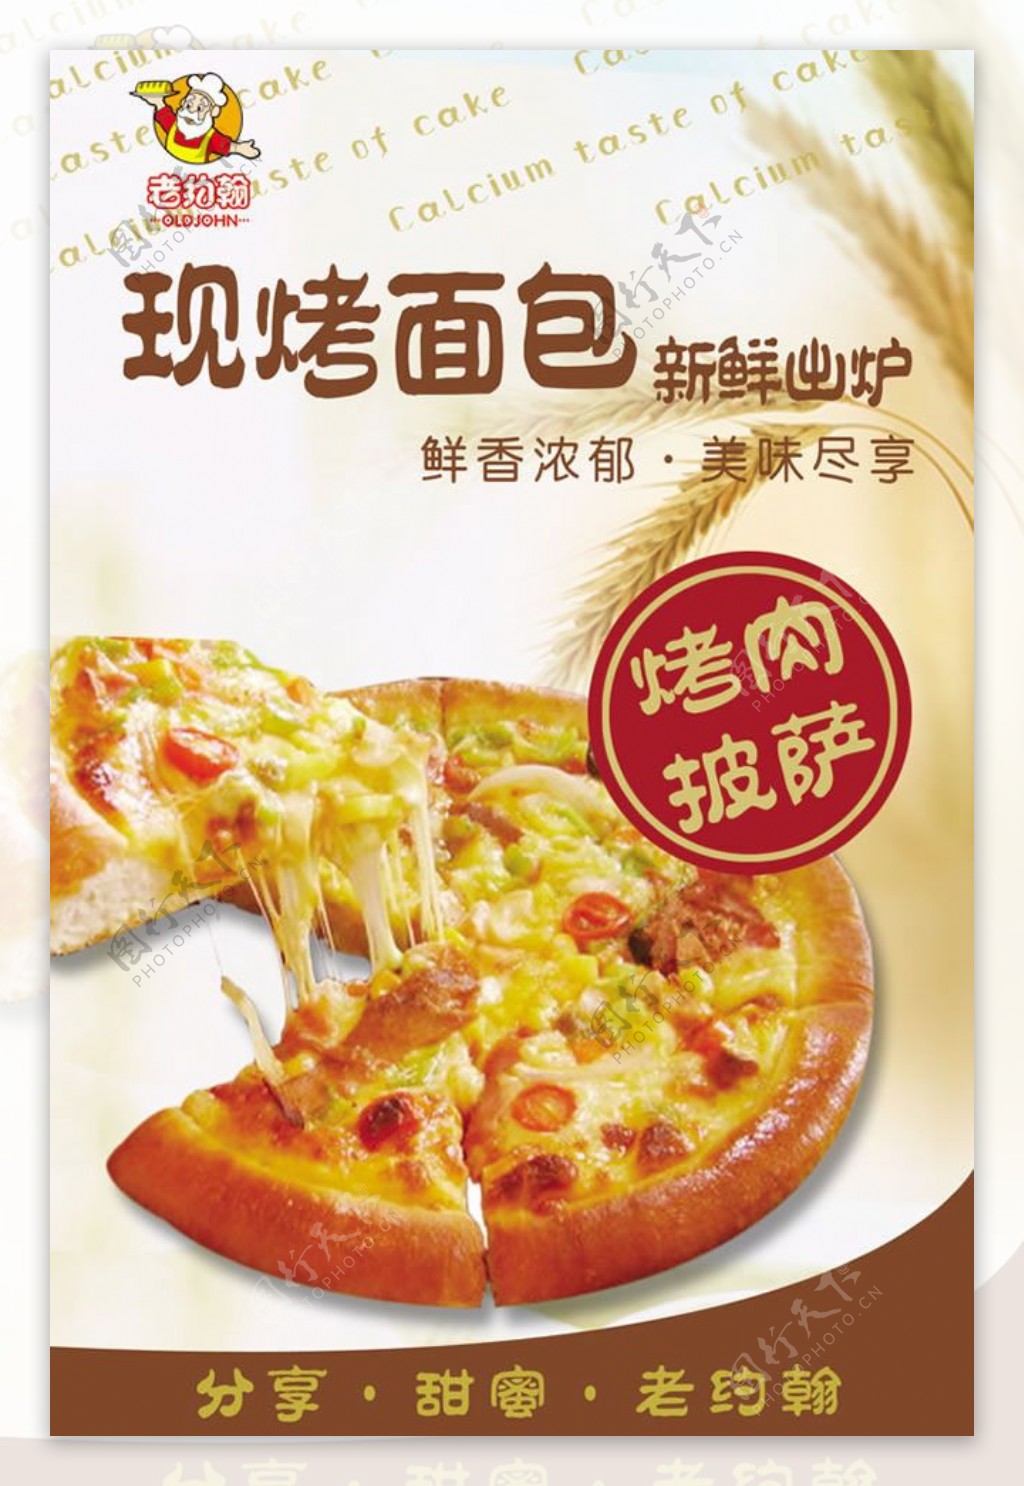 面包店披萨宣传海报设计psd素材